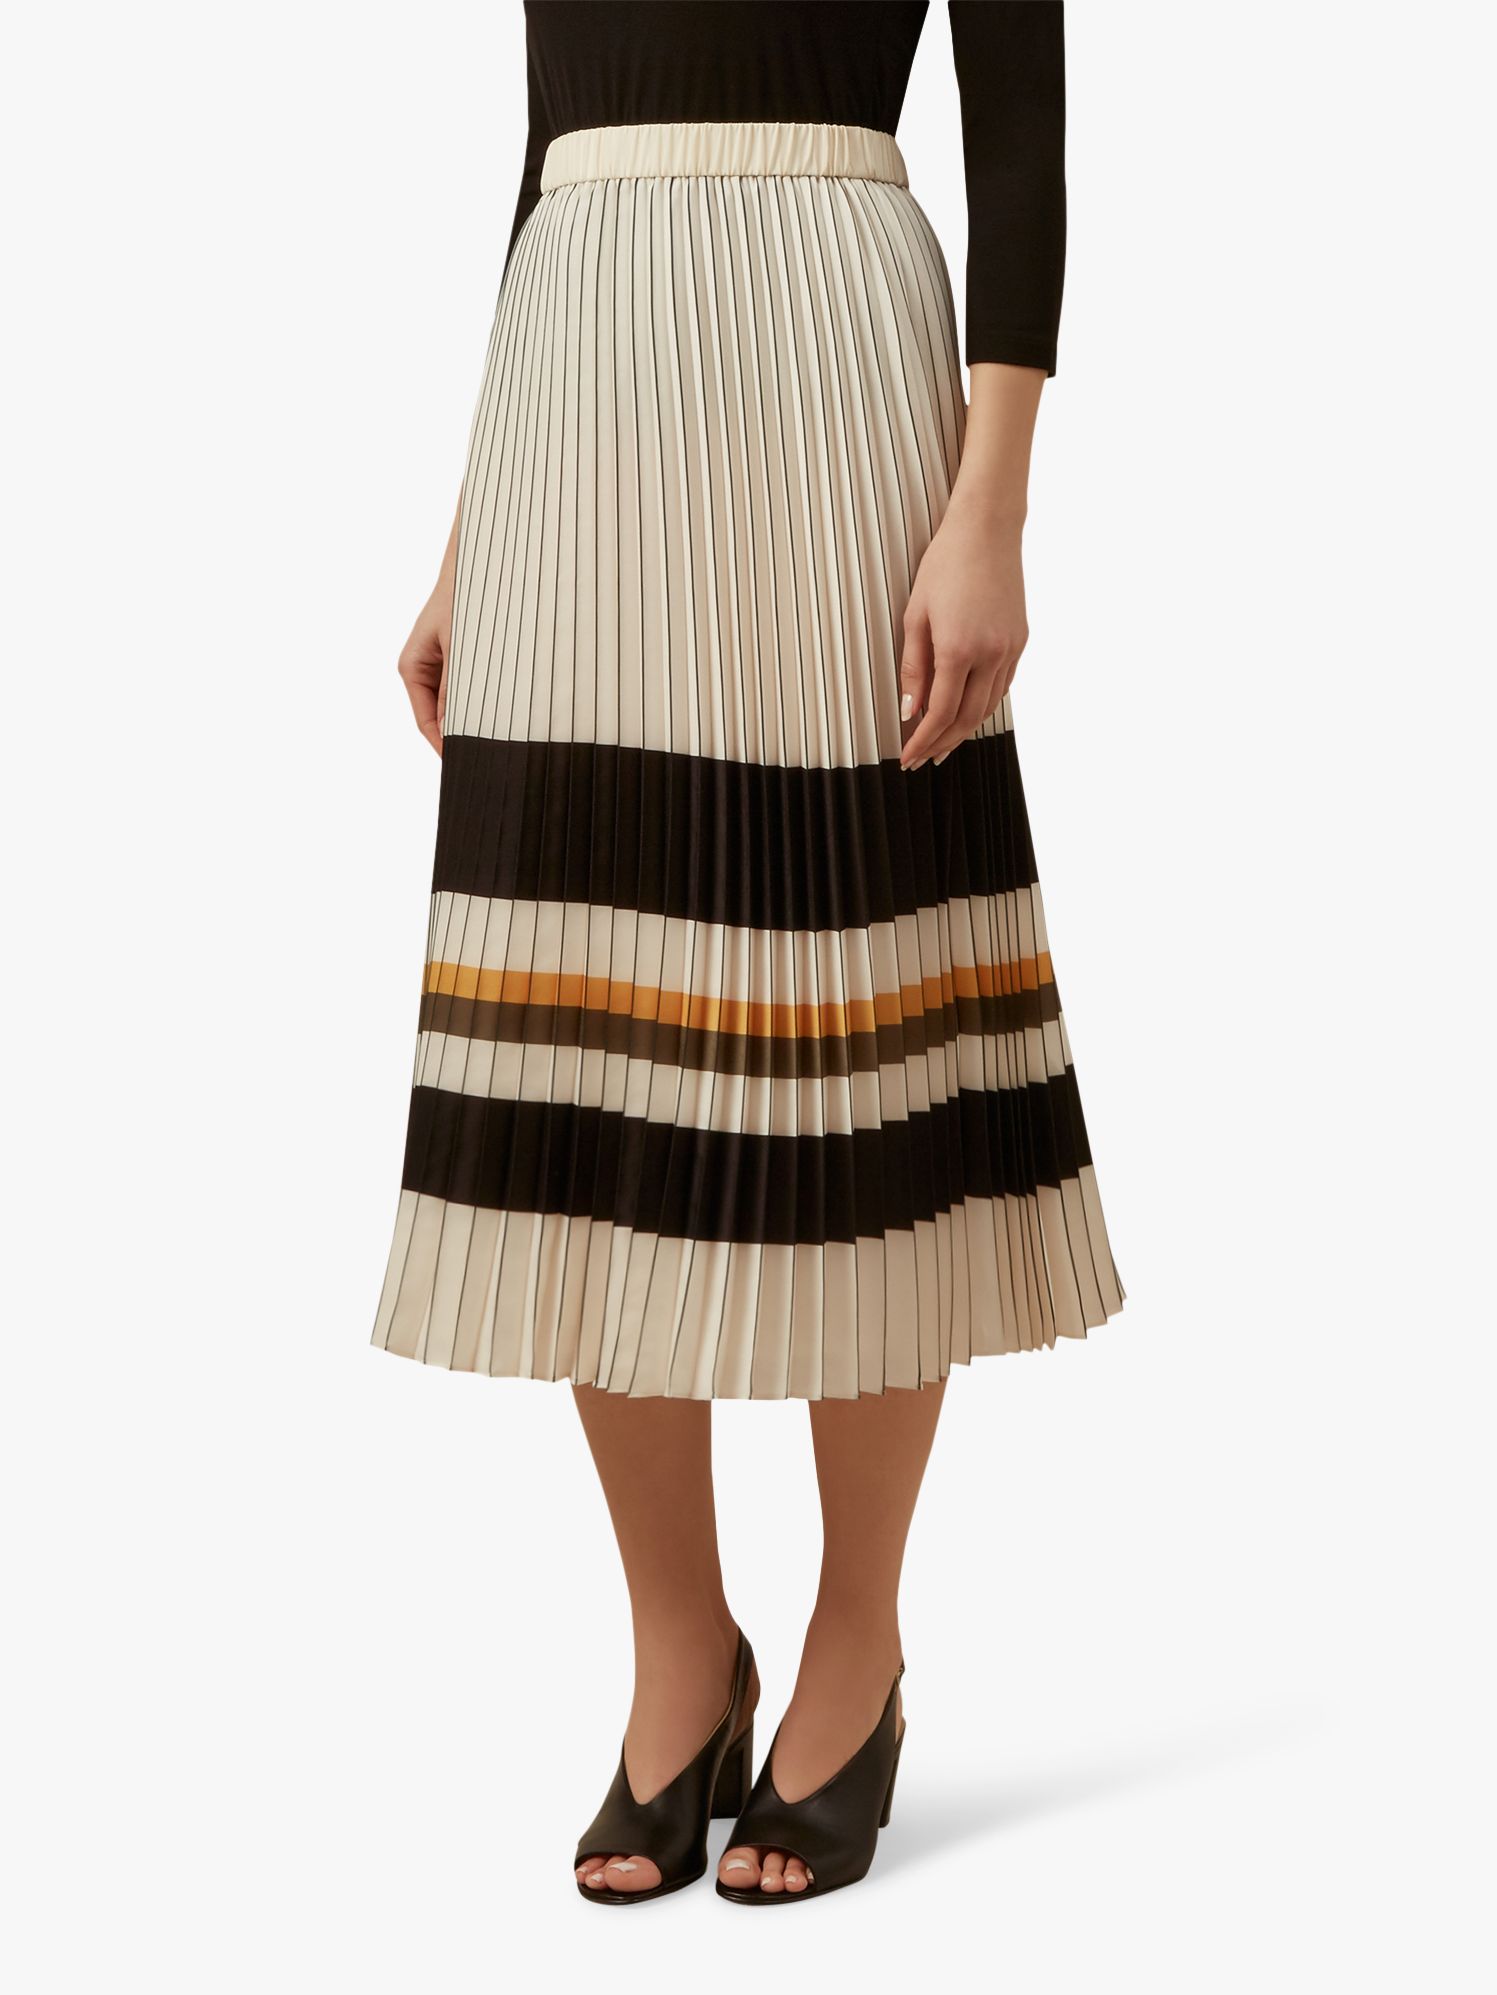 Hobbs Zoe Pleated Stripe Midi Skirt, Ivory/Multi